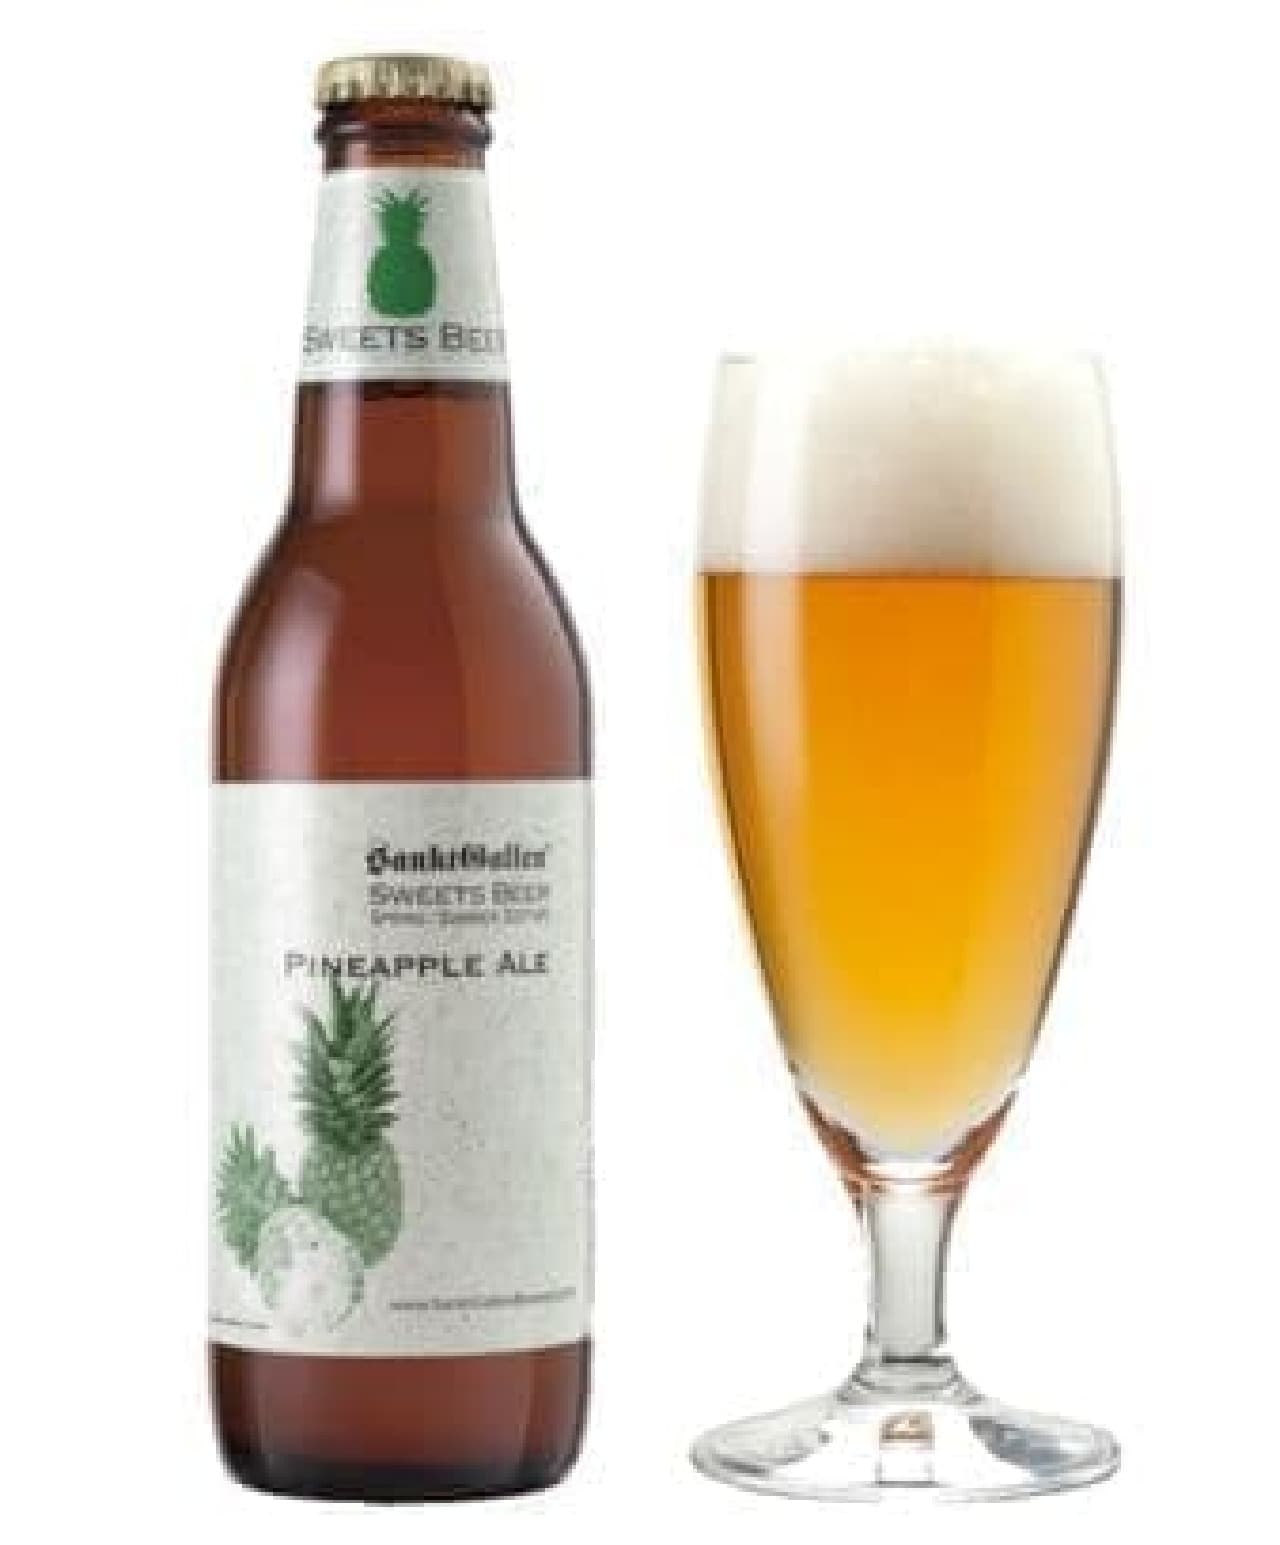 Sankt Gallen "Pineapple Ale"